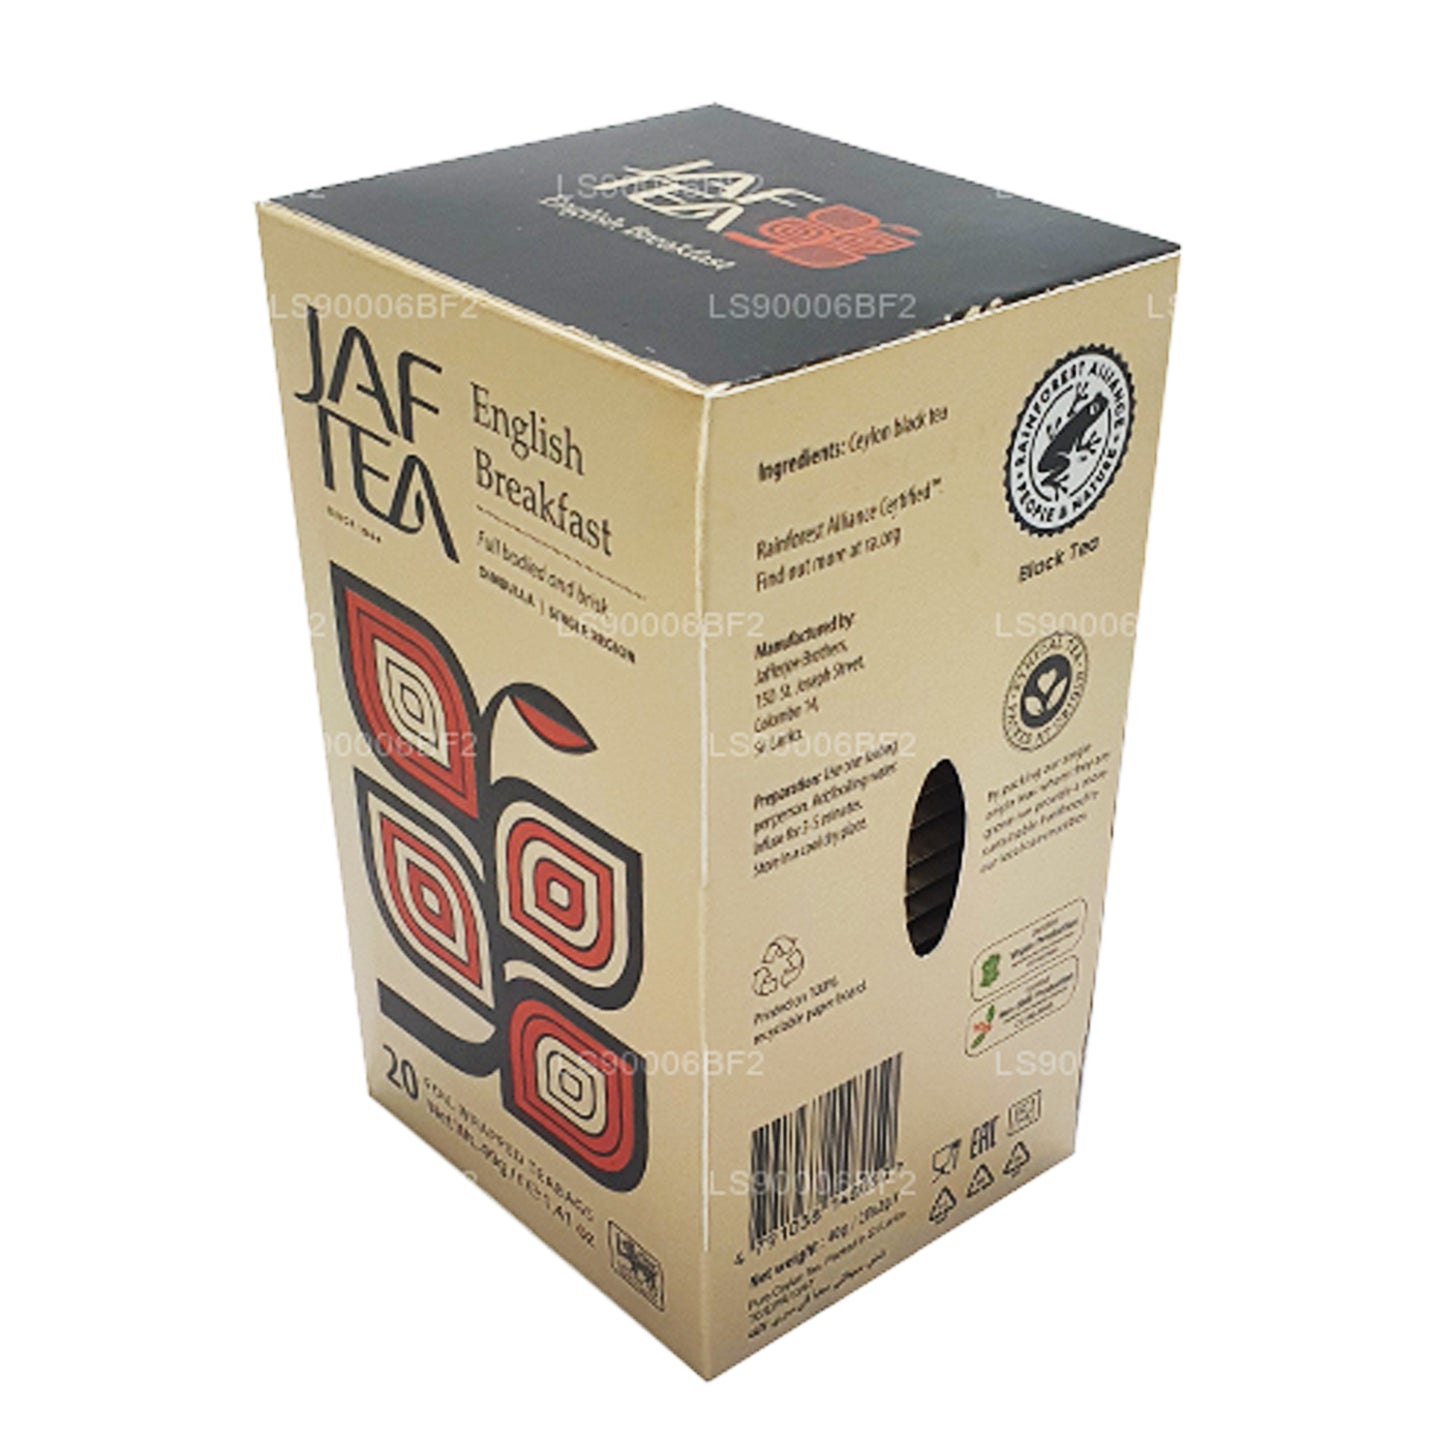 Английский завтрак Jaf Tea (40 г) 20 пакетиков чая